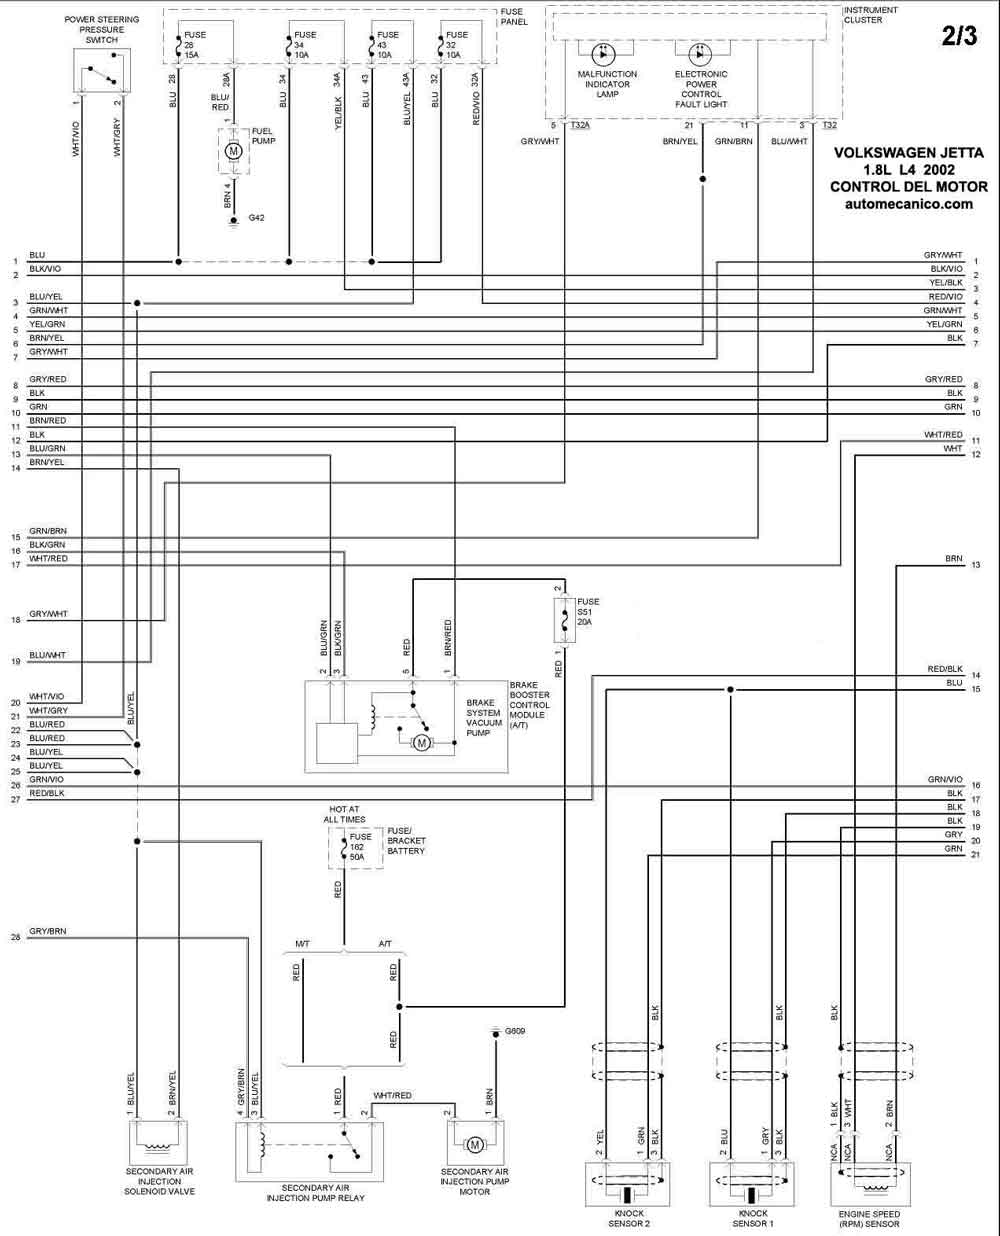 diagrama electrico de control de motor